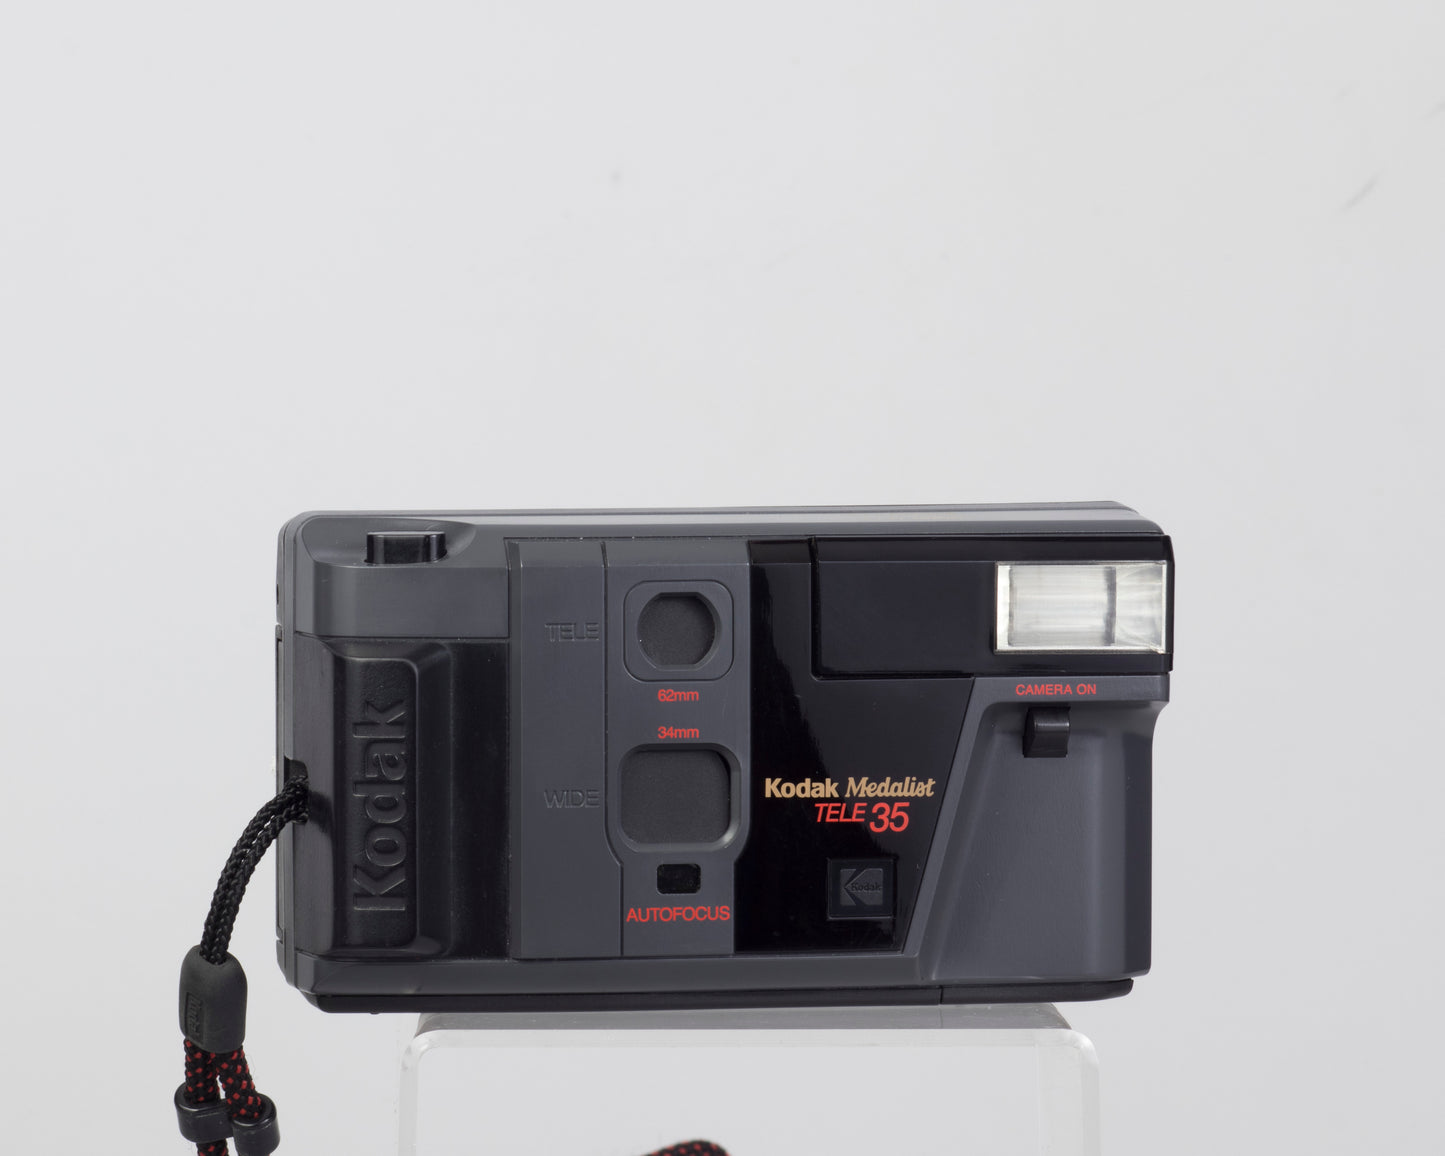 Kodak Medalist S900 Tele dual lens 35mm film camera